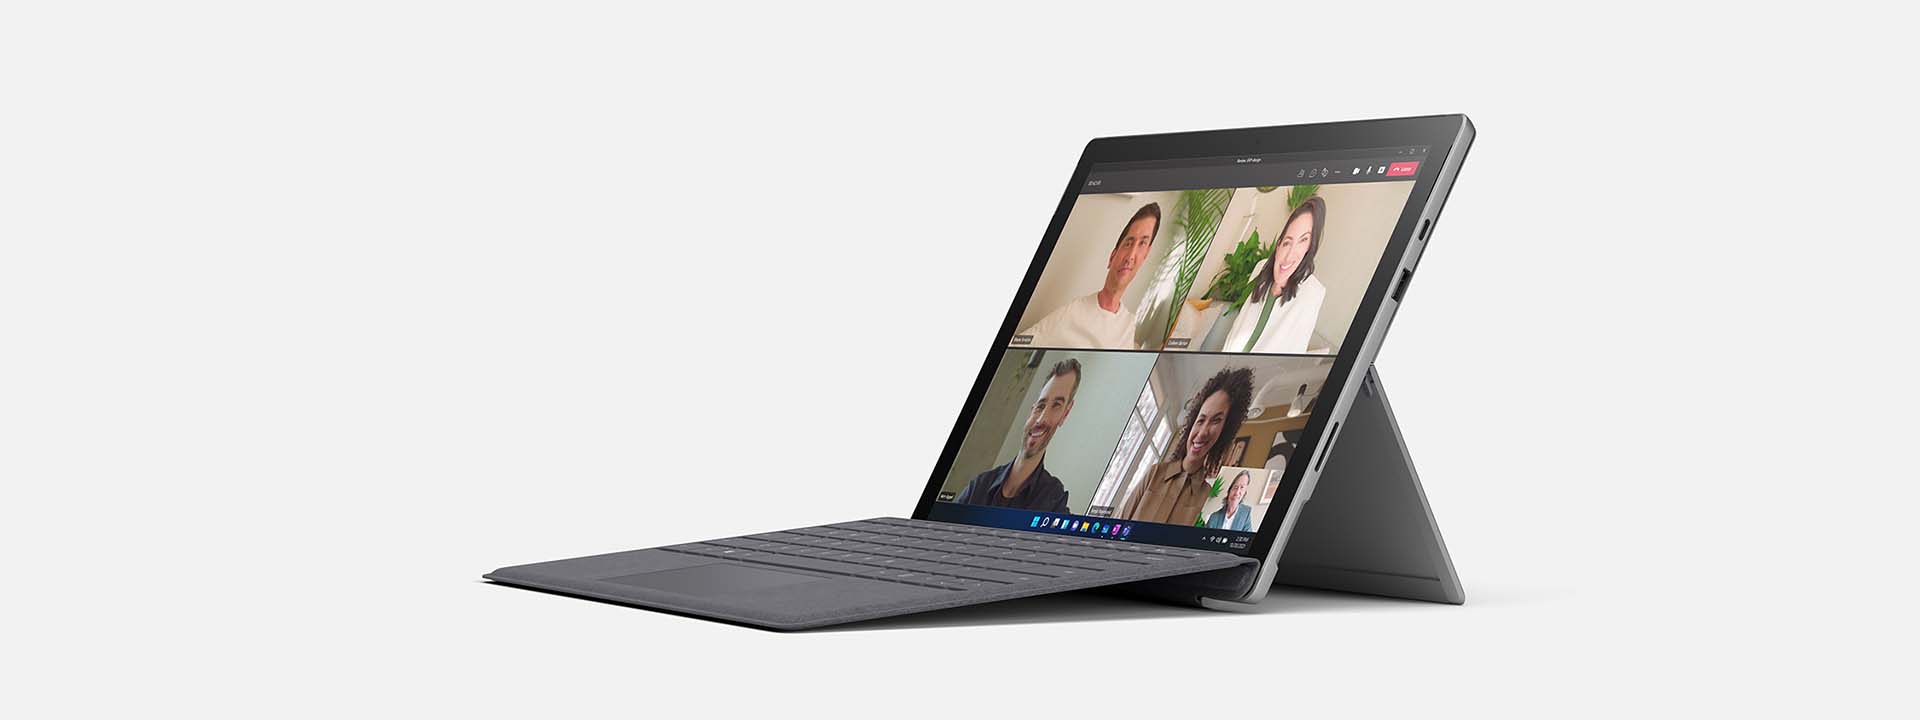 Surface Pro 7+: 法人向けのポータブルな 2 in 1 ノート PC - 法人向け Microsoft Surface